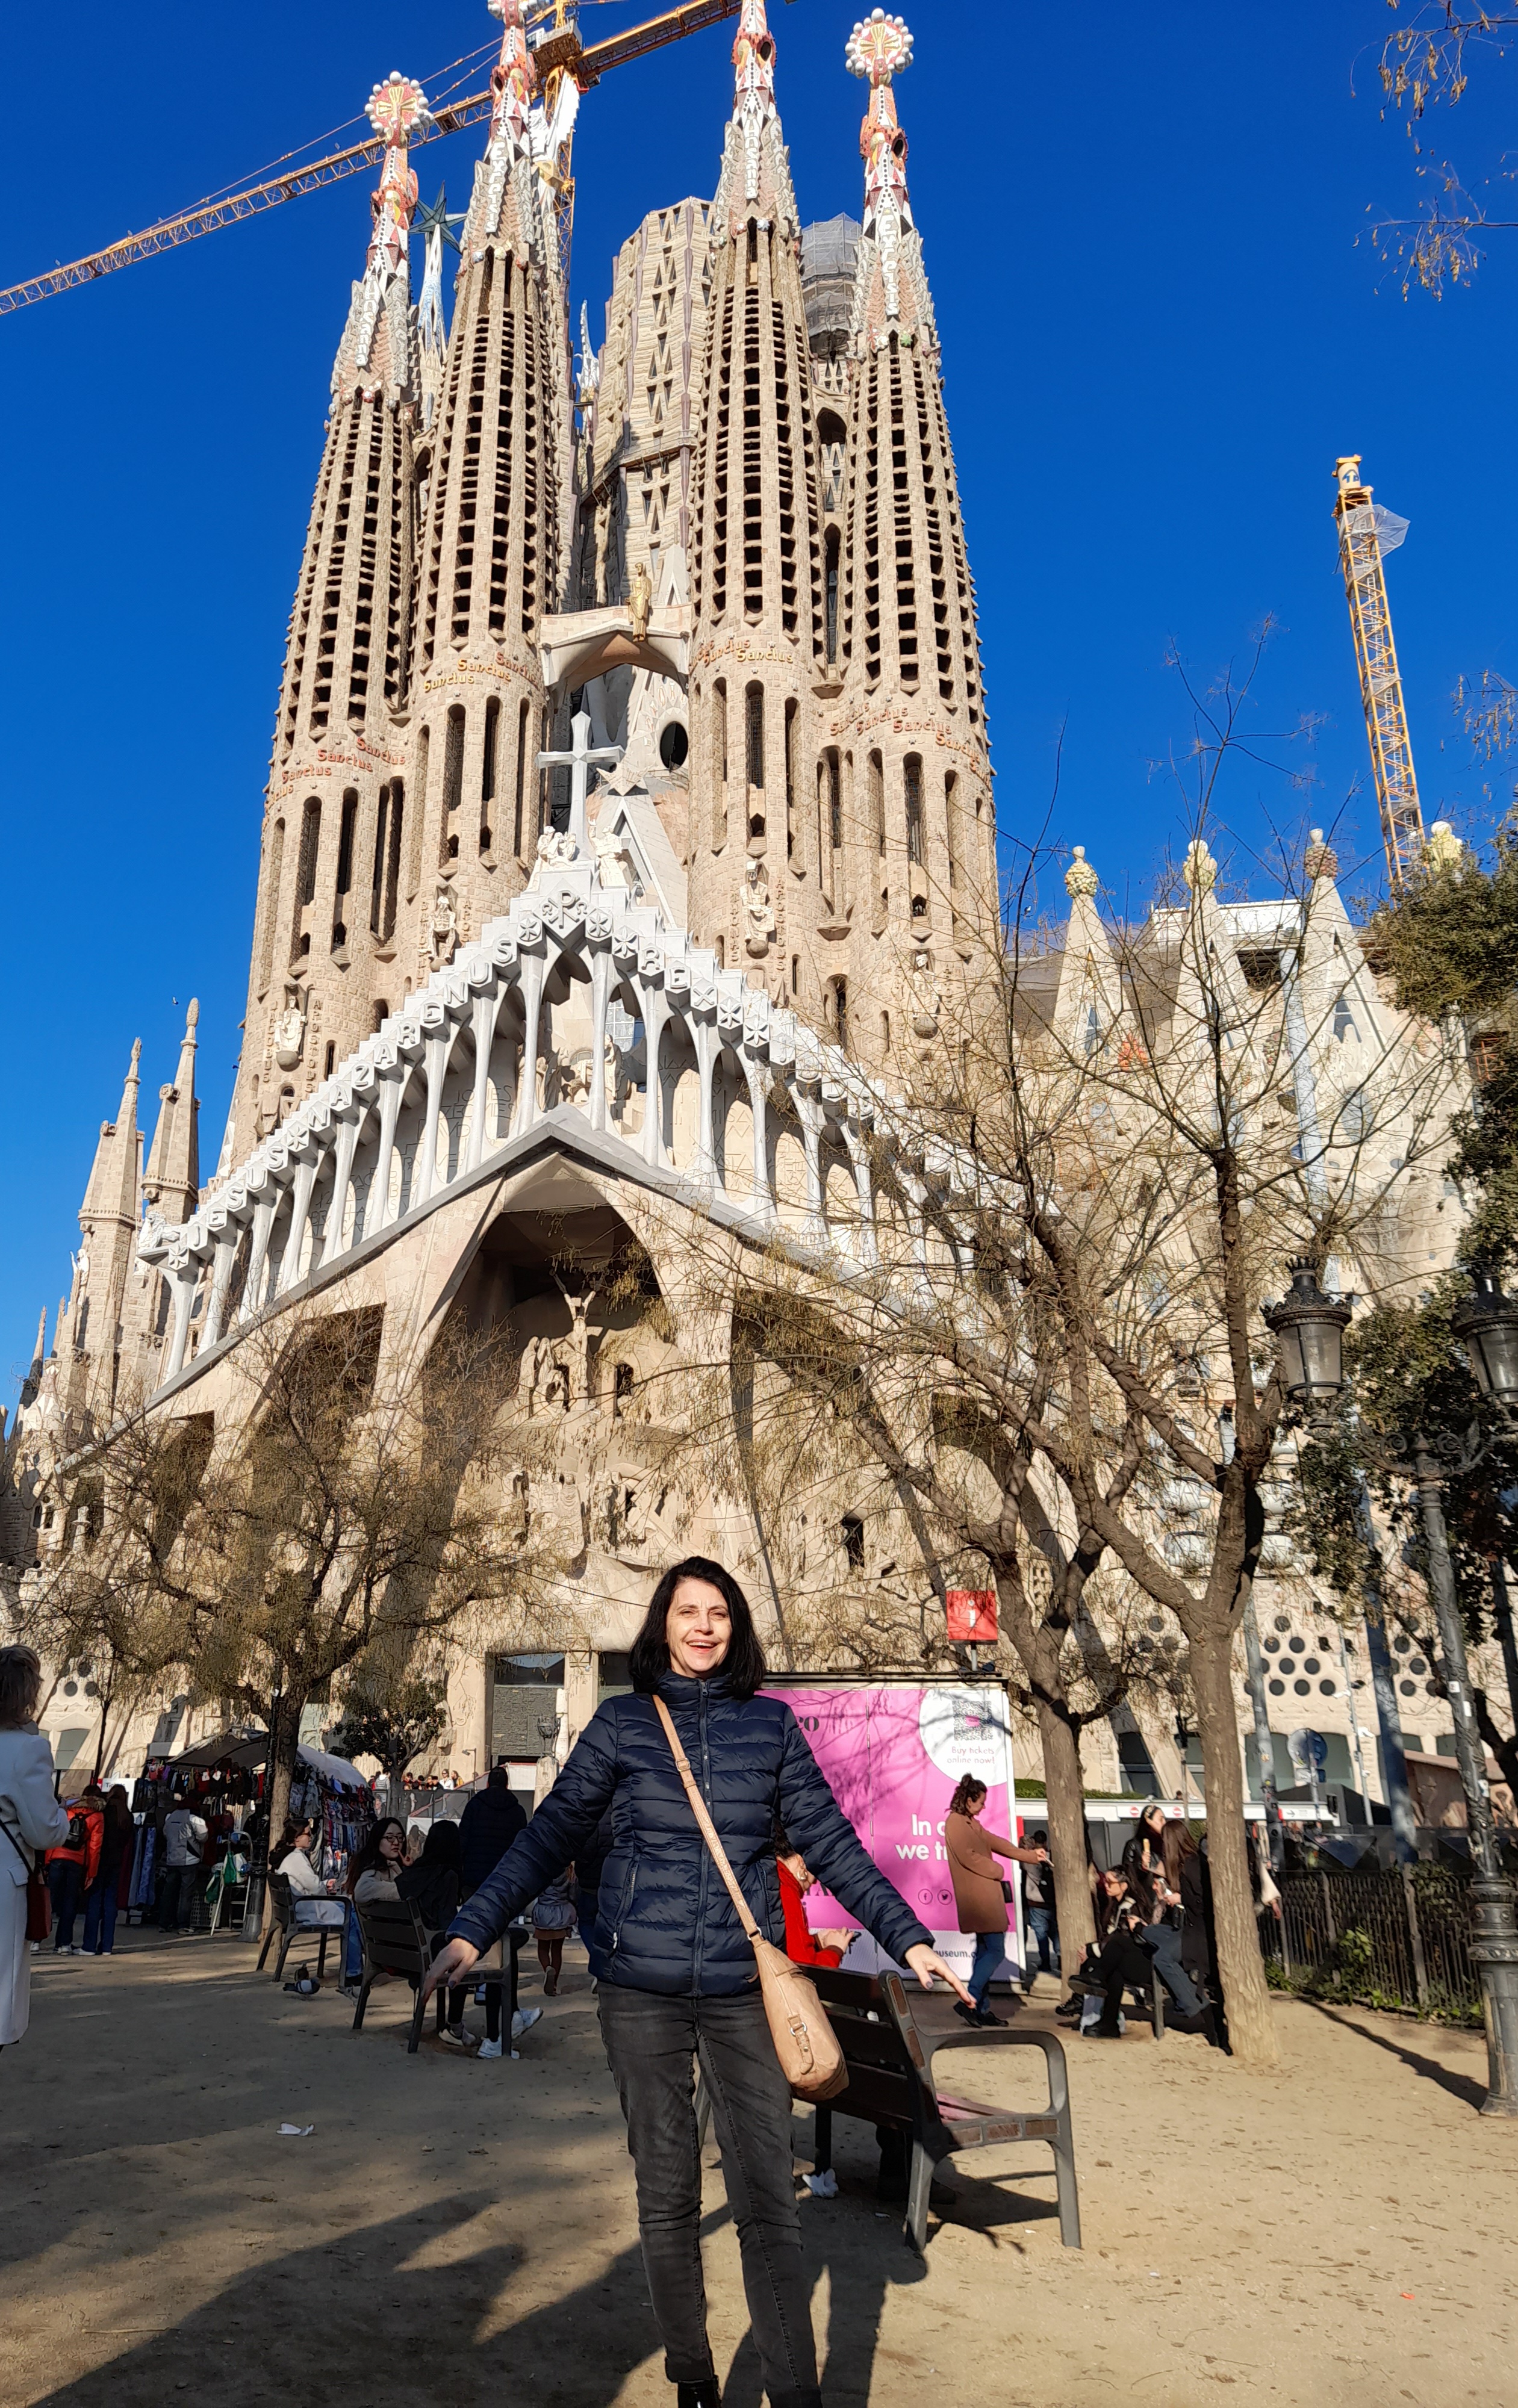 Na tle katedry Sagrada Familia, najbardziej rozpoznawalnego budynku Barcelony